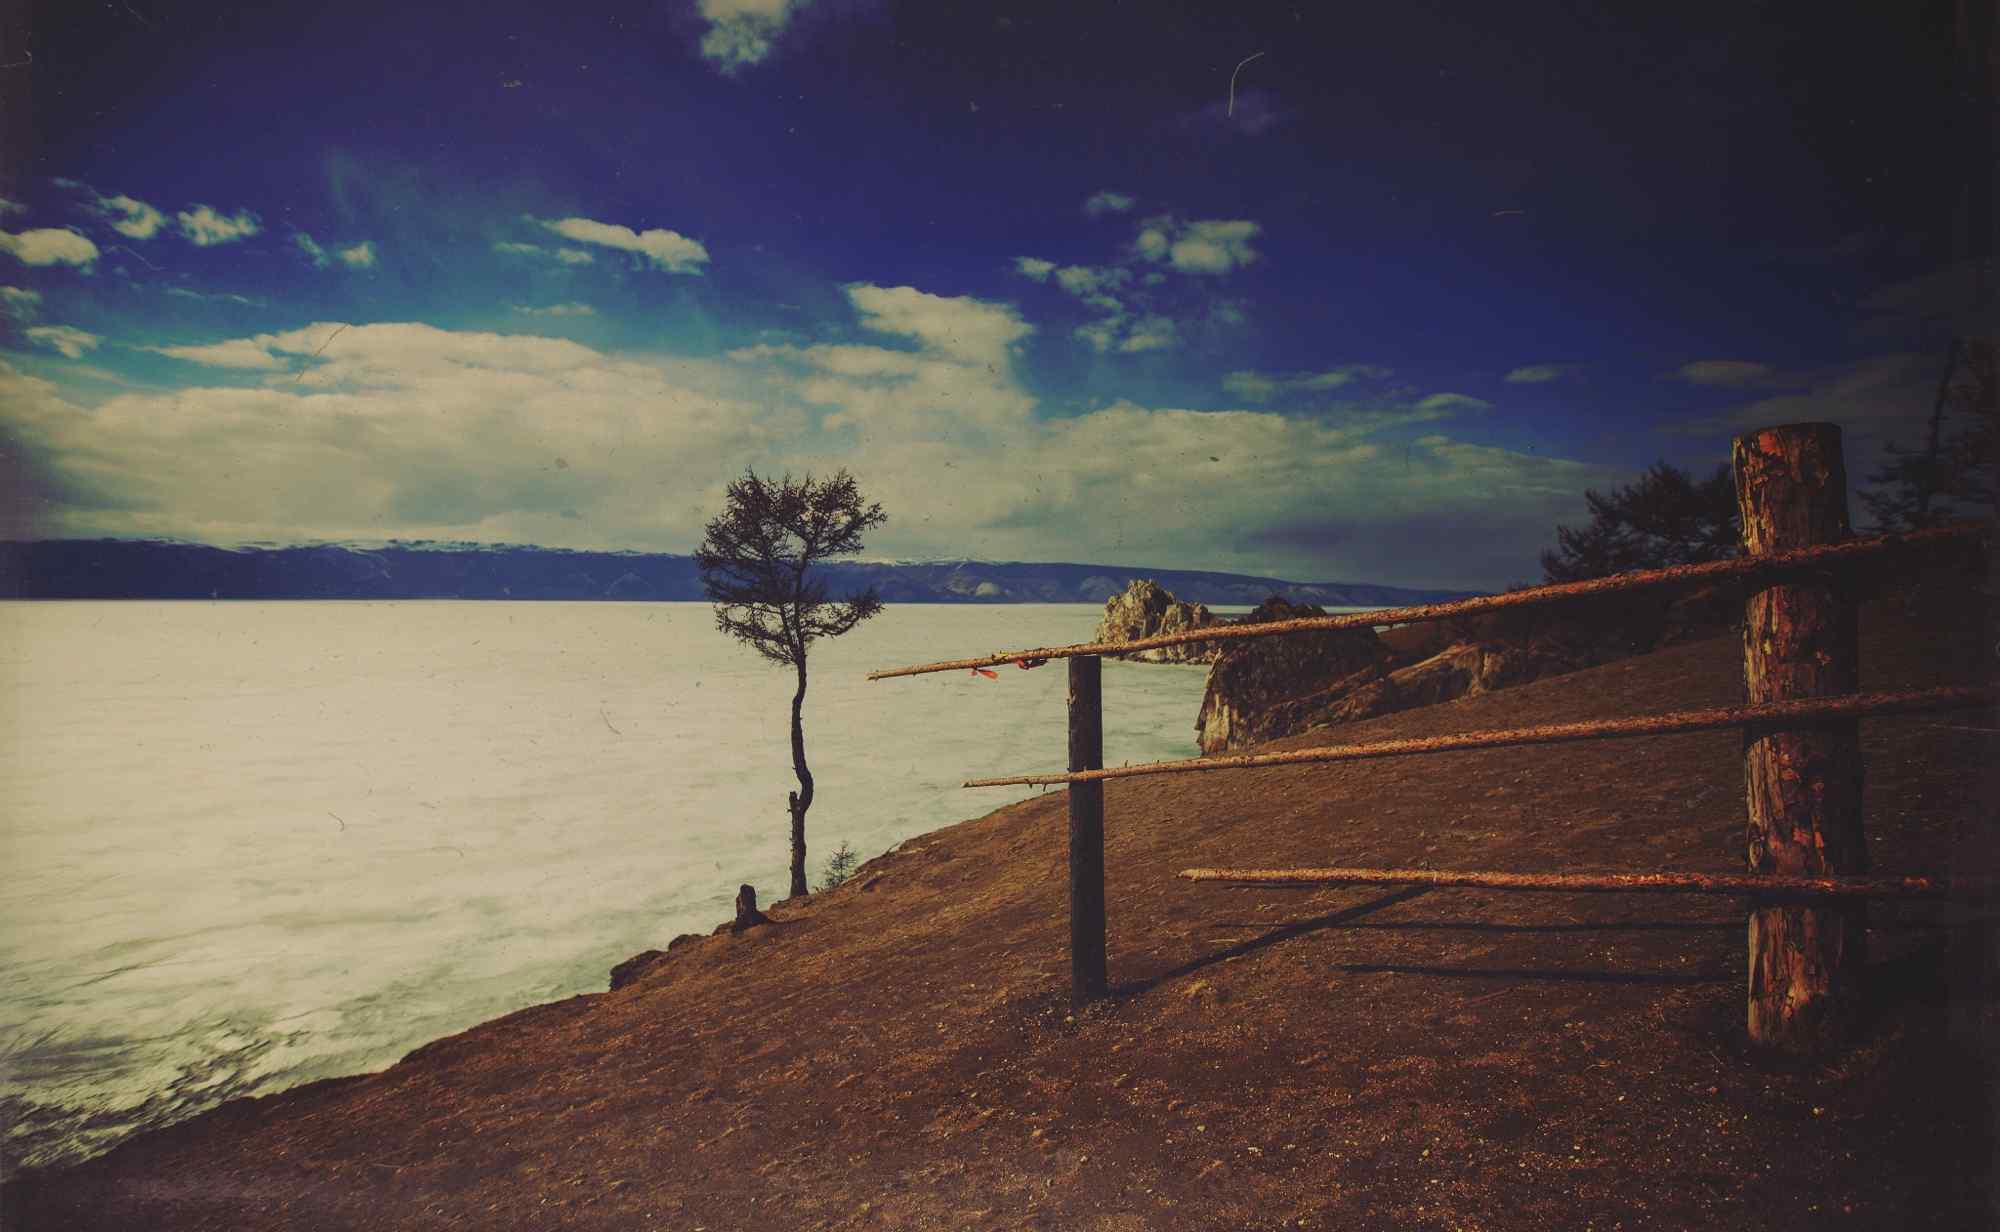 贝加尔湖湖畔寂寥风景图片桌面壁纸